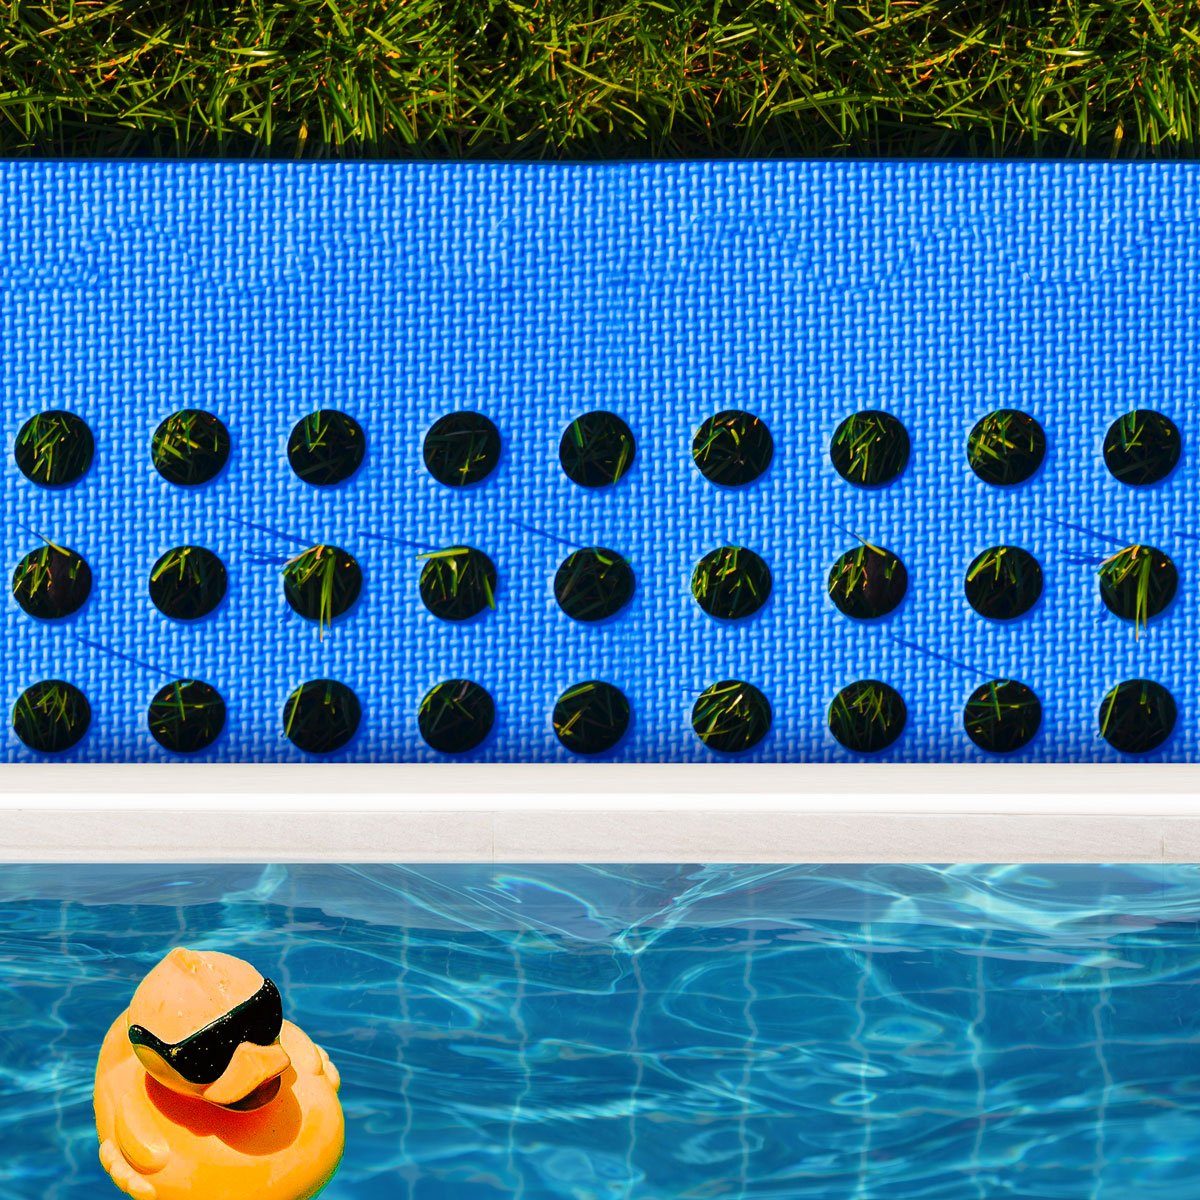 Set 62x62, Pool Poolunterlage m² Matten Blau EVA 44 Bodenmatte rutschfest Stecksystem eyepower 16